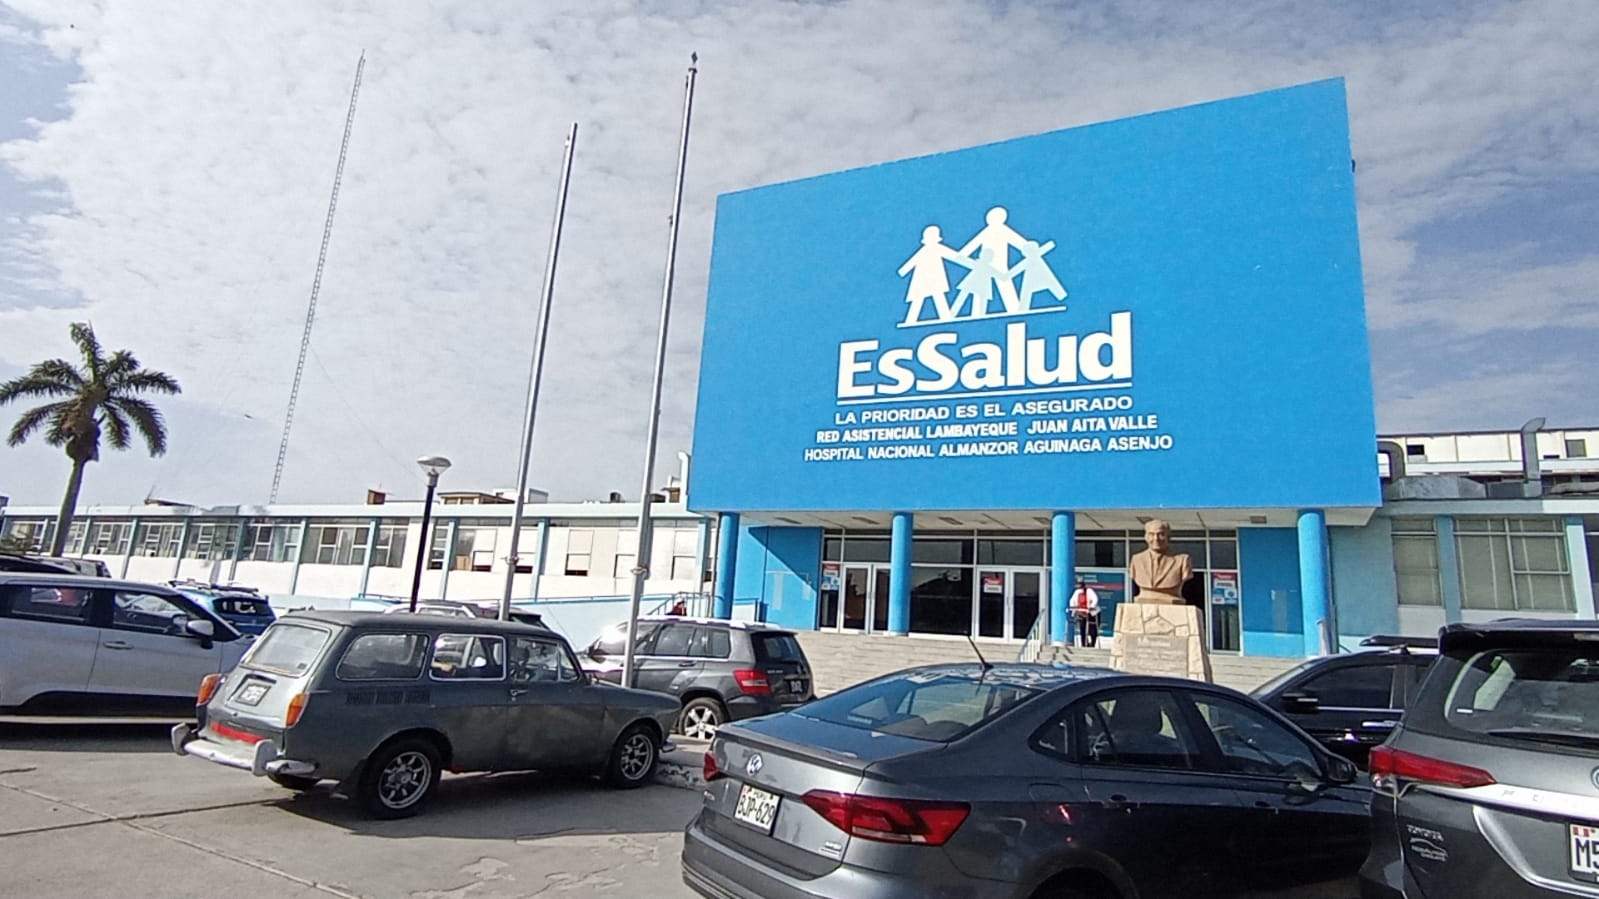 Essalud - Niña de Chiclayo fue dada de alta médica del hospital Almanzor Aguinaga de EsSalud